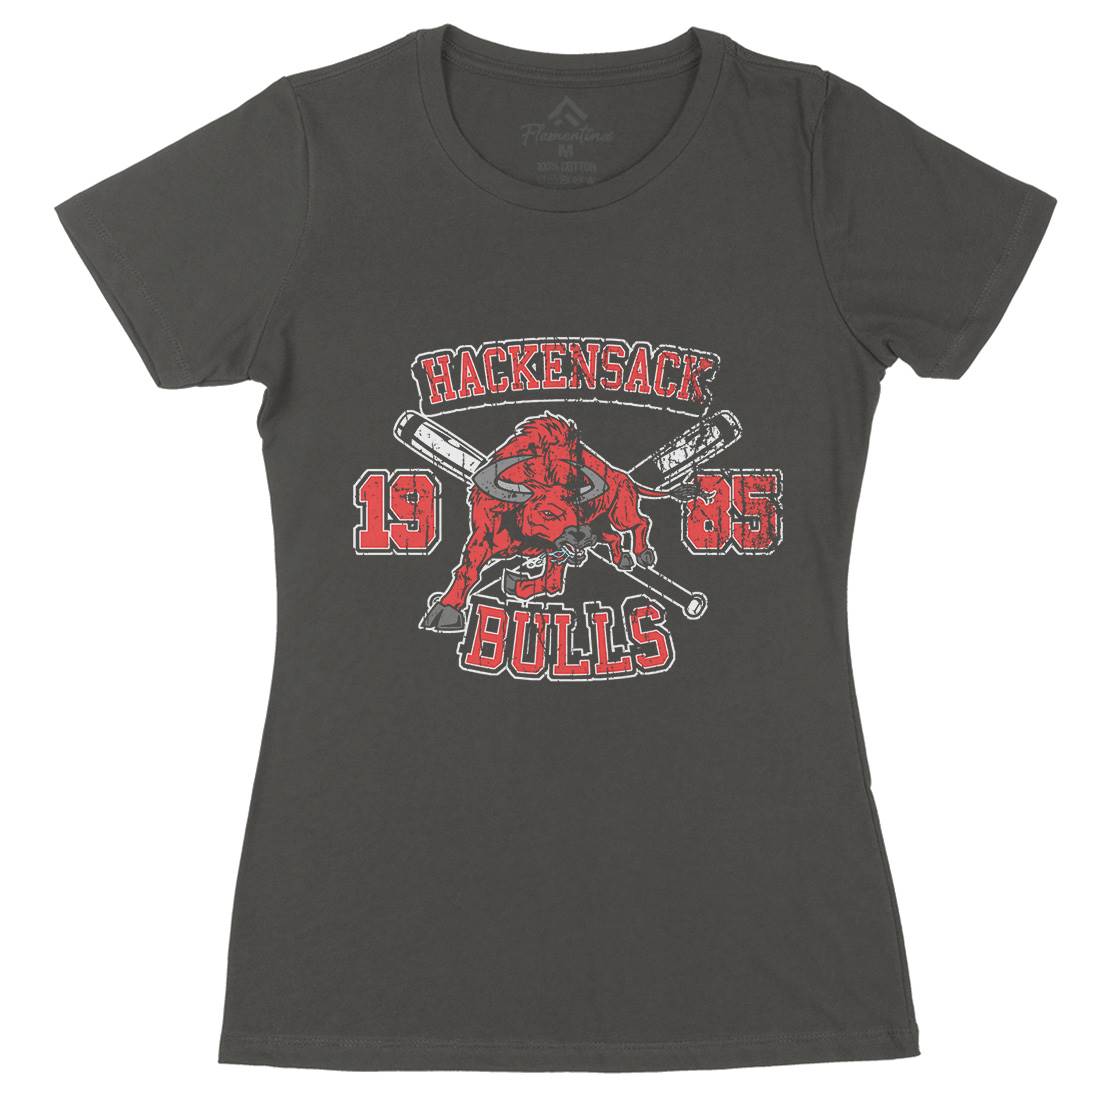 Hackensack Bulls Womens Organic Crew Neck T-Shirt Sport D121